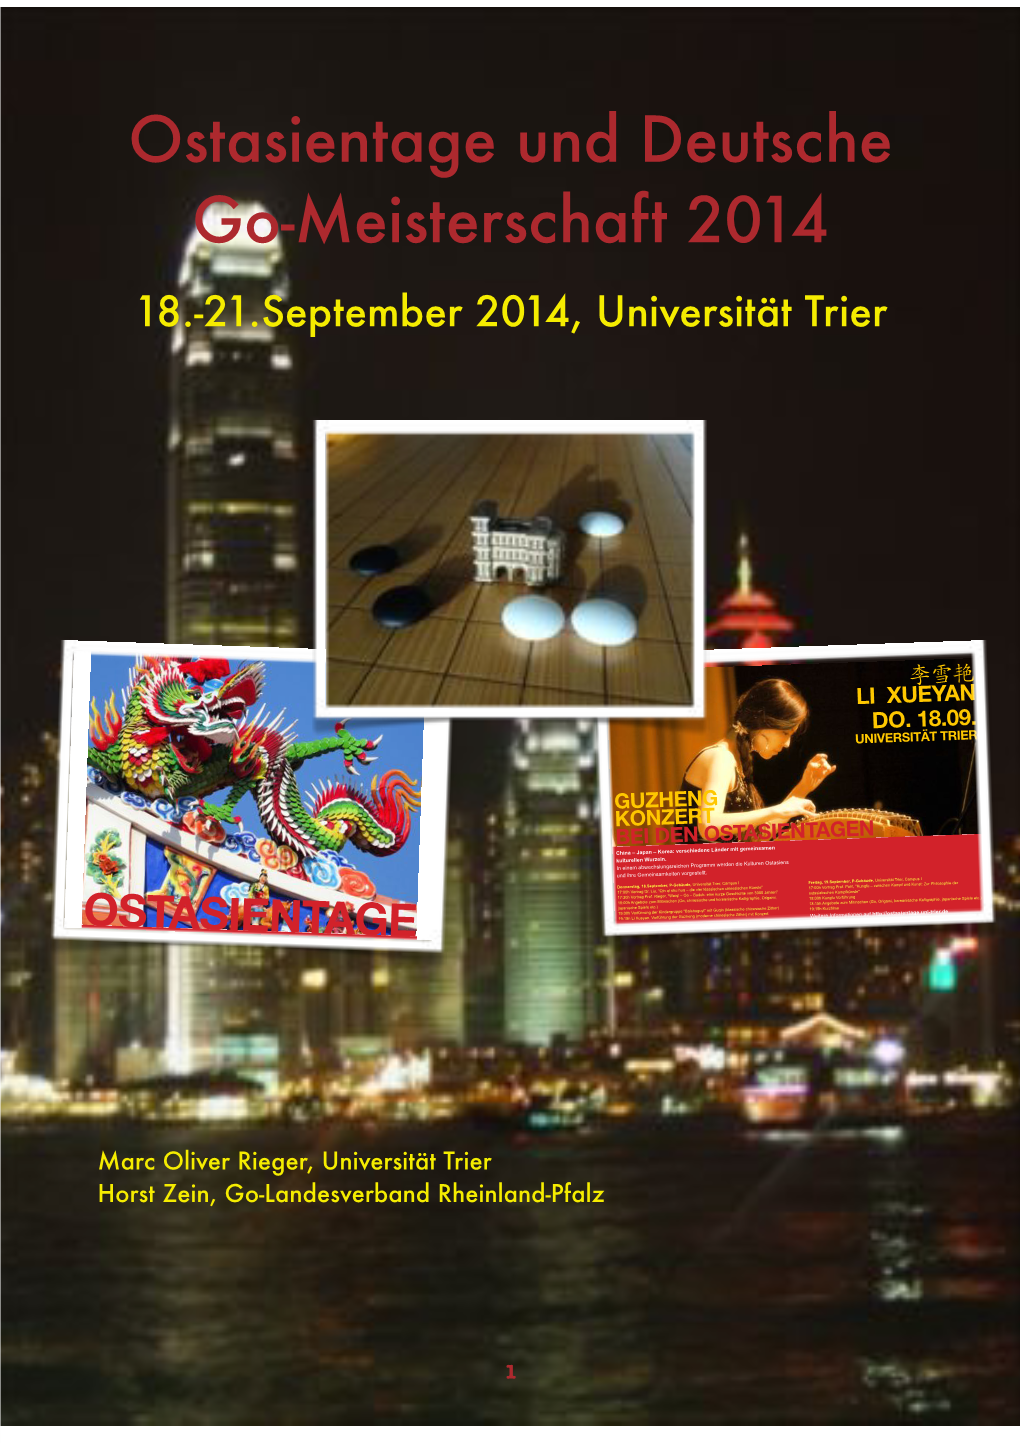 Ostasientage Und Deutsche Go-Meisterschaft 2014 18.-21.September 2014, Universität Trier